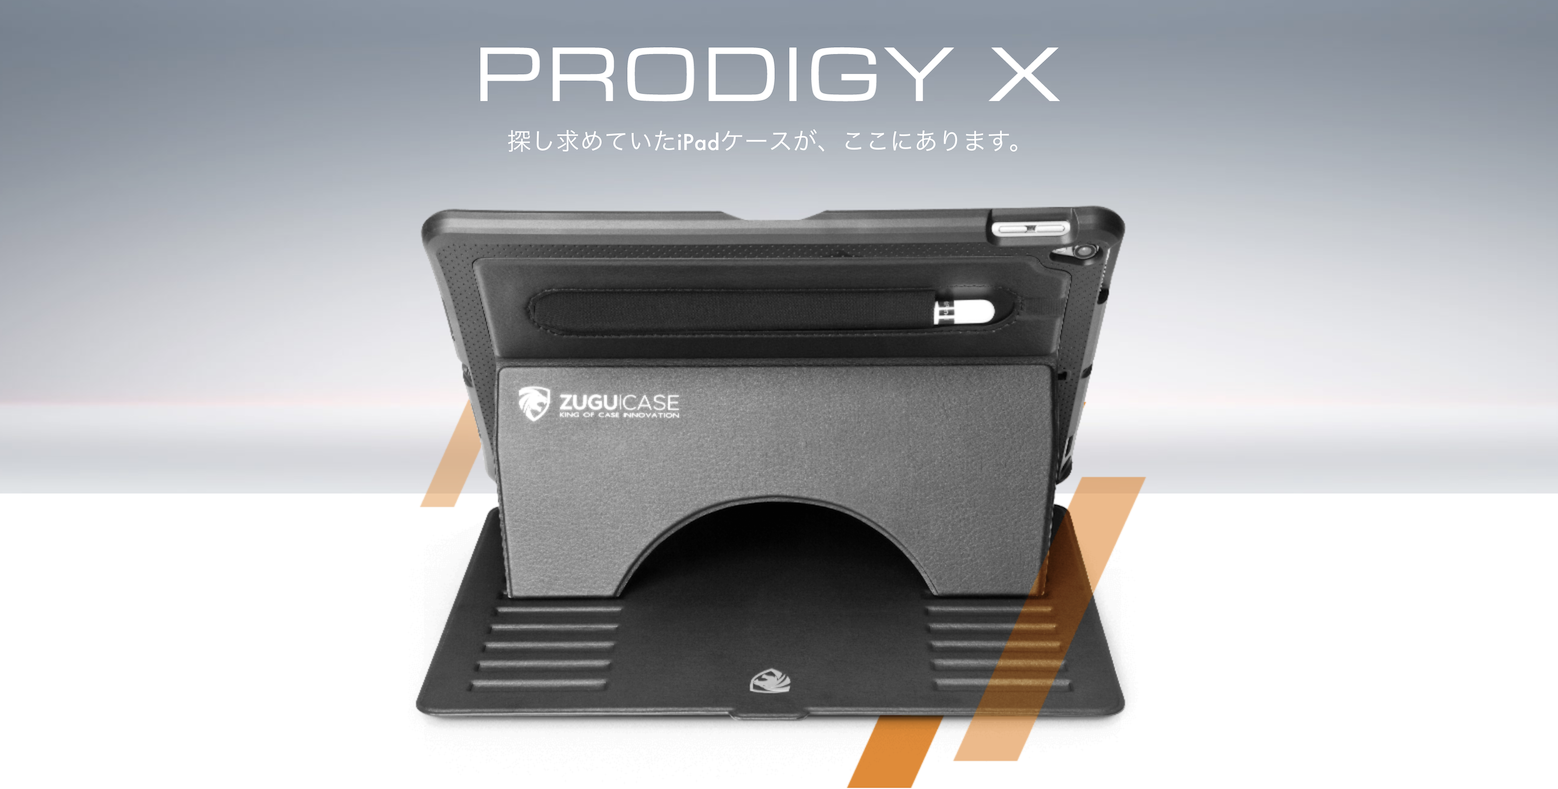 キックスタンド搭載で衝撃にも強いiPadケース『ZUGU CASE Prodigy X』レビュー | Time to live forever